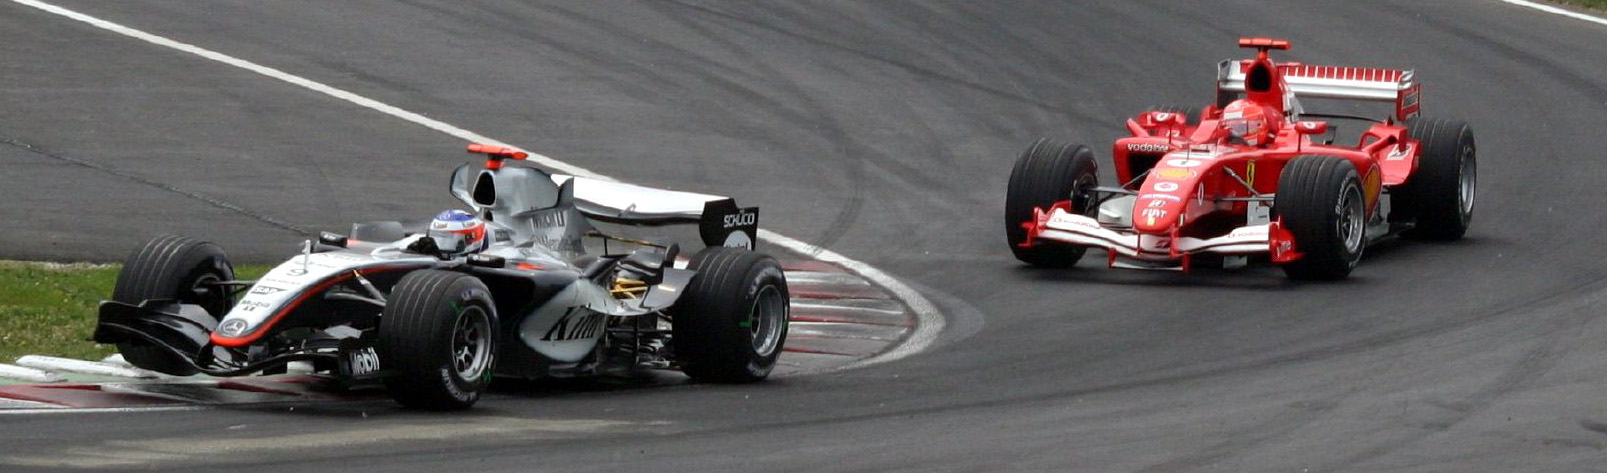 michael Schumacher racing